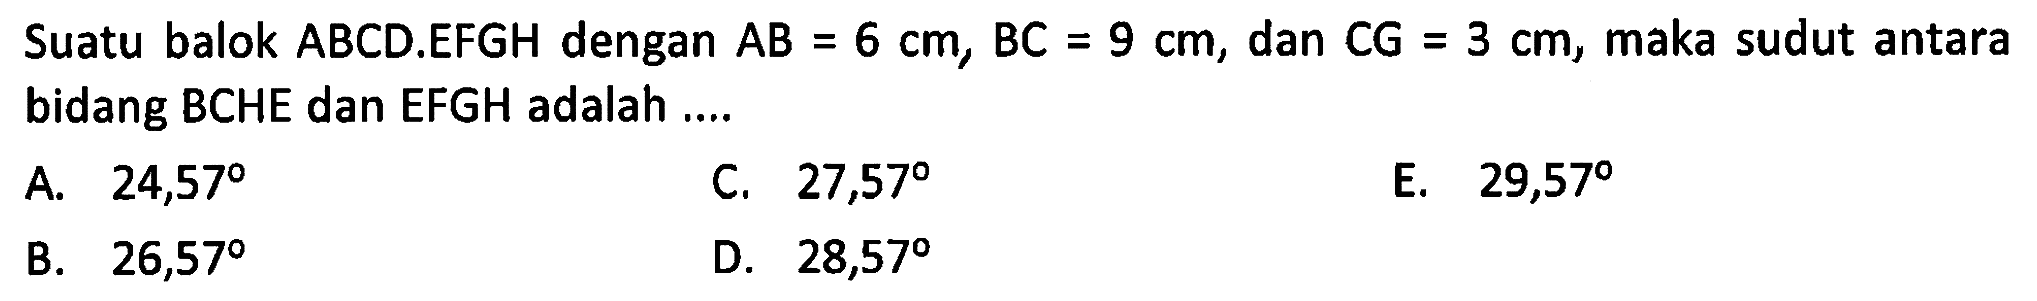 Suatu balok ABCD.EFGH dengan AB=6 cm, BC=9 cm, dan CG=3 cm, maka sudut antara bidang BCHE dan EFGH adalah....